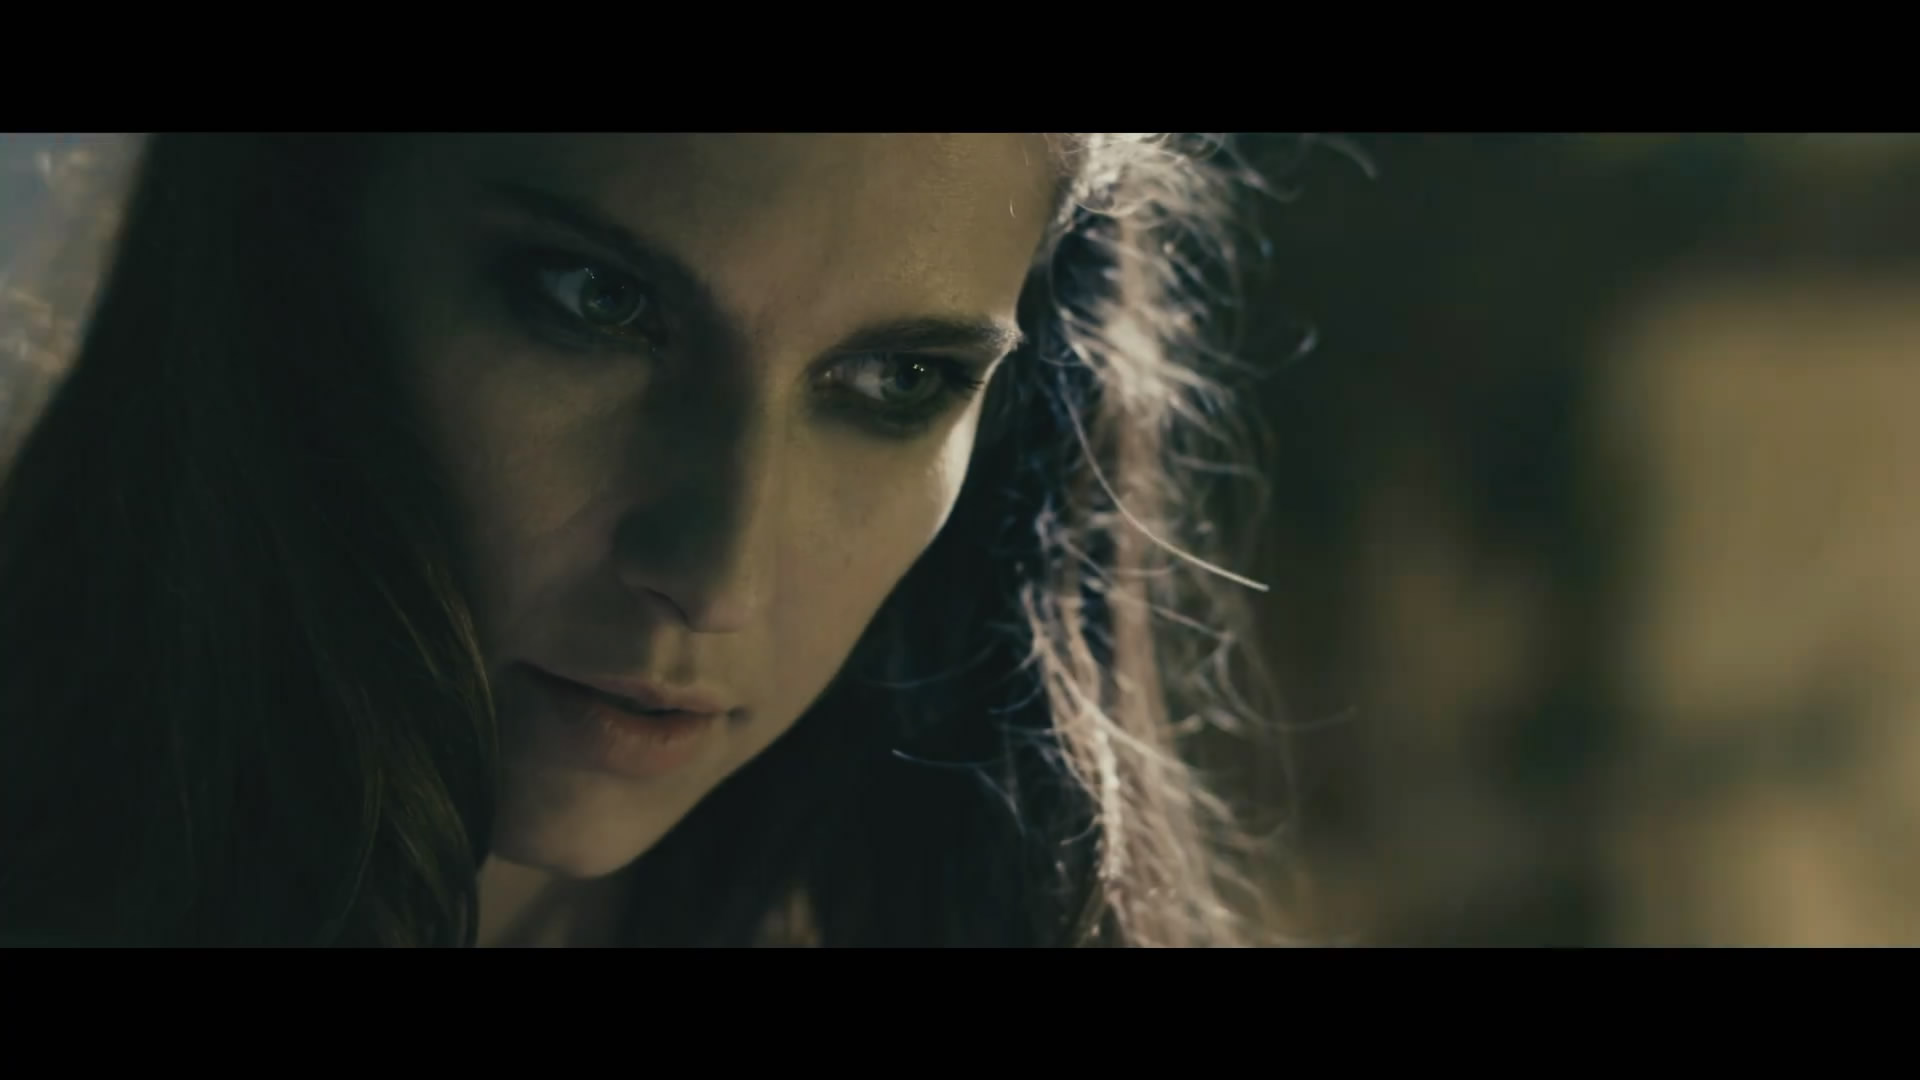 粉丝版《巫师》电影新预告片 影片将于11月30日上映